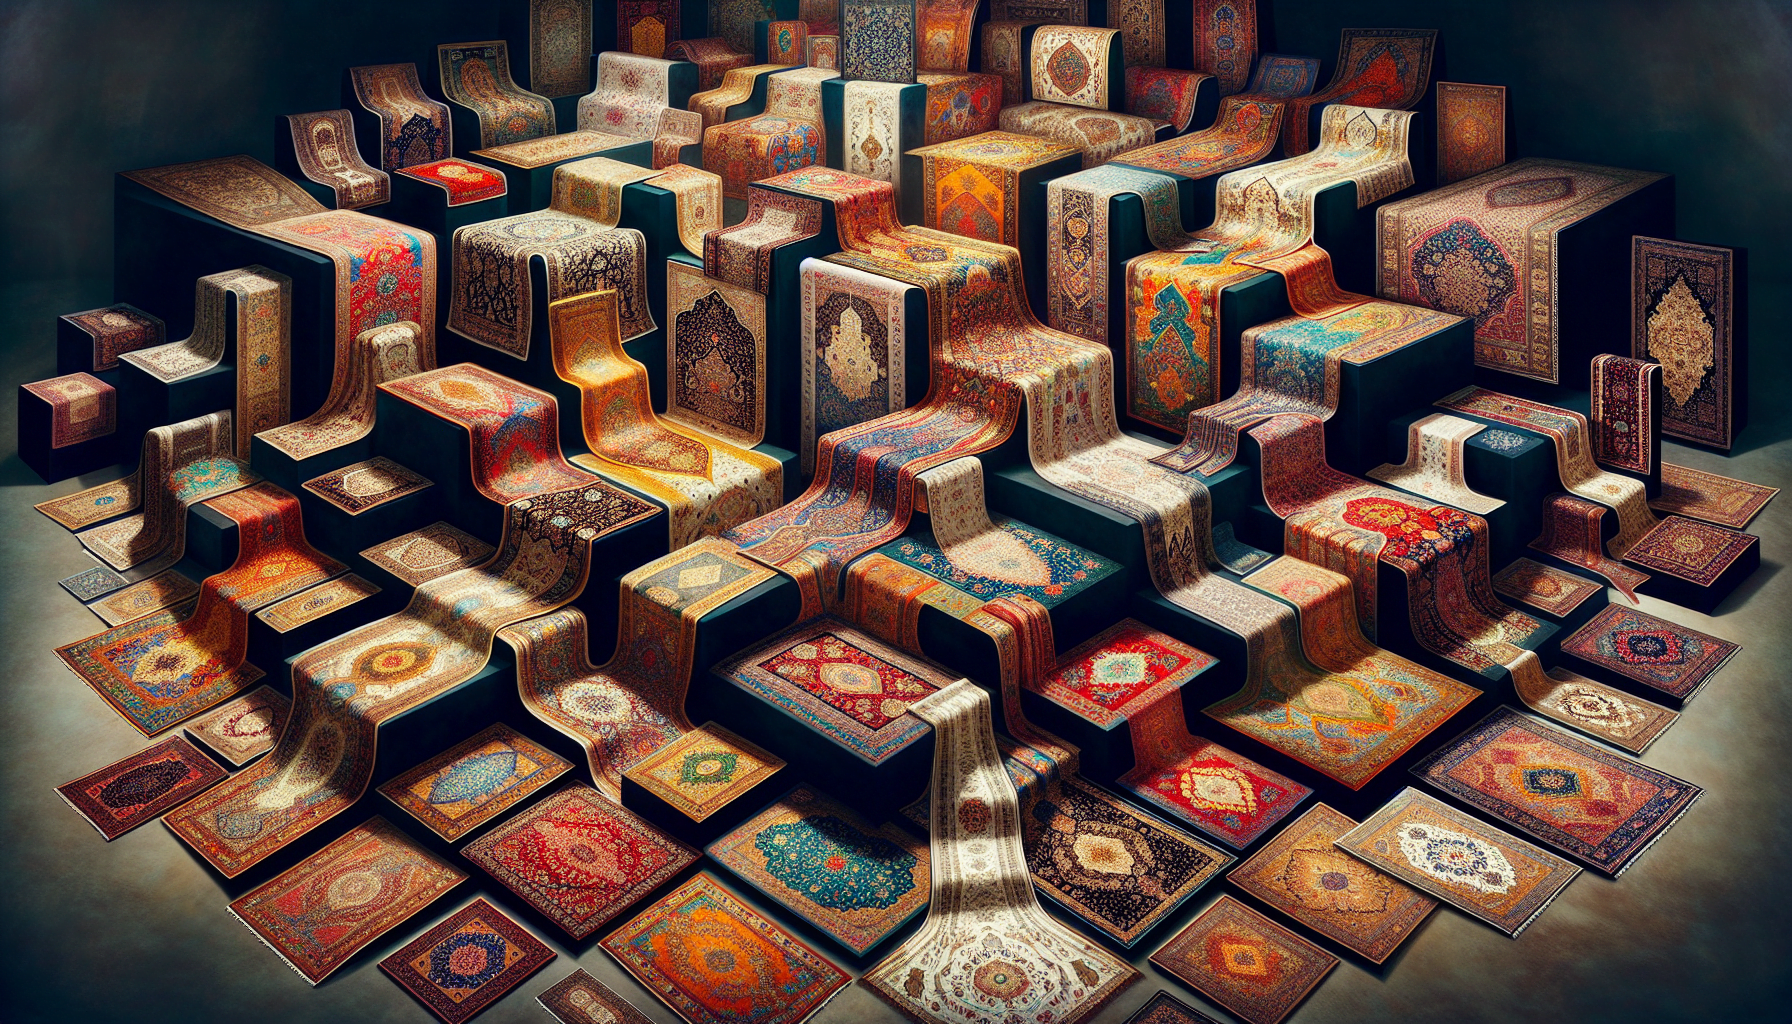 Cultural diversity reflected in various regional Persian rug designs